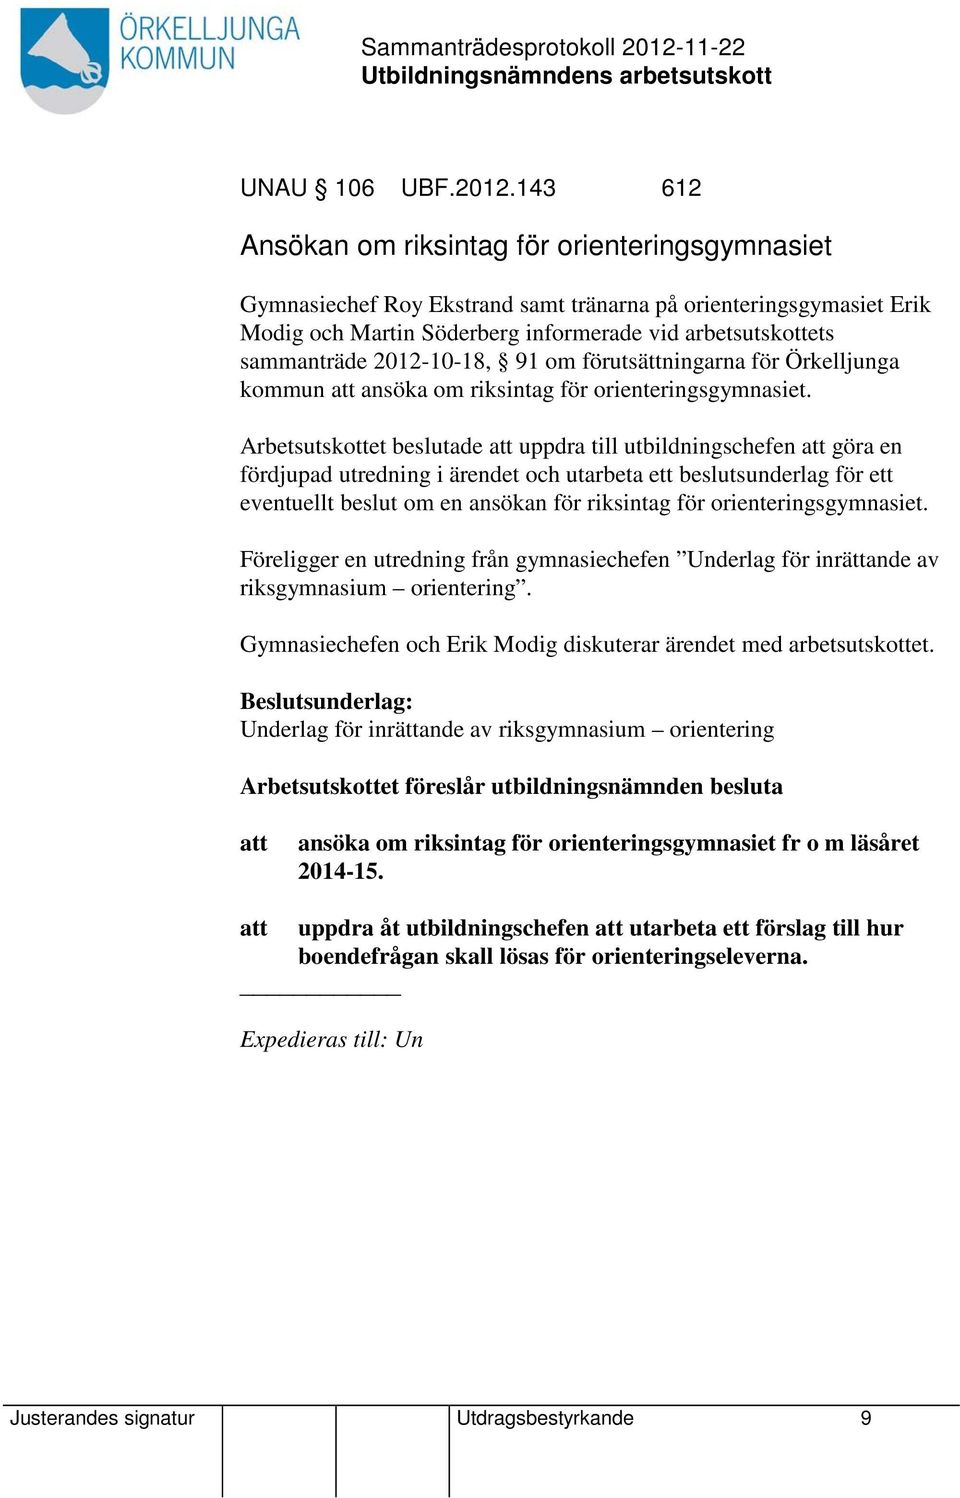 2012-10-18, 91 om förutsättningarna för Örkelljunga kommun att ansöka om riksintag för orienteringsgymnasiet.